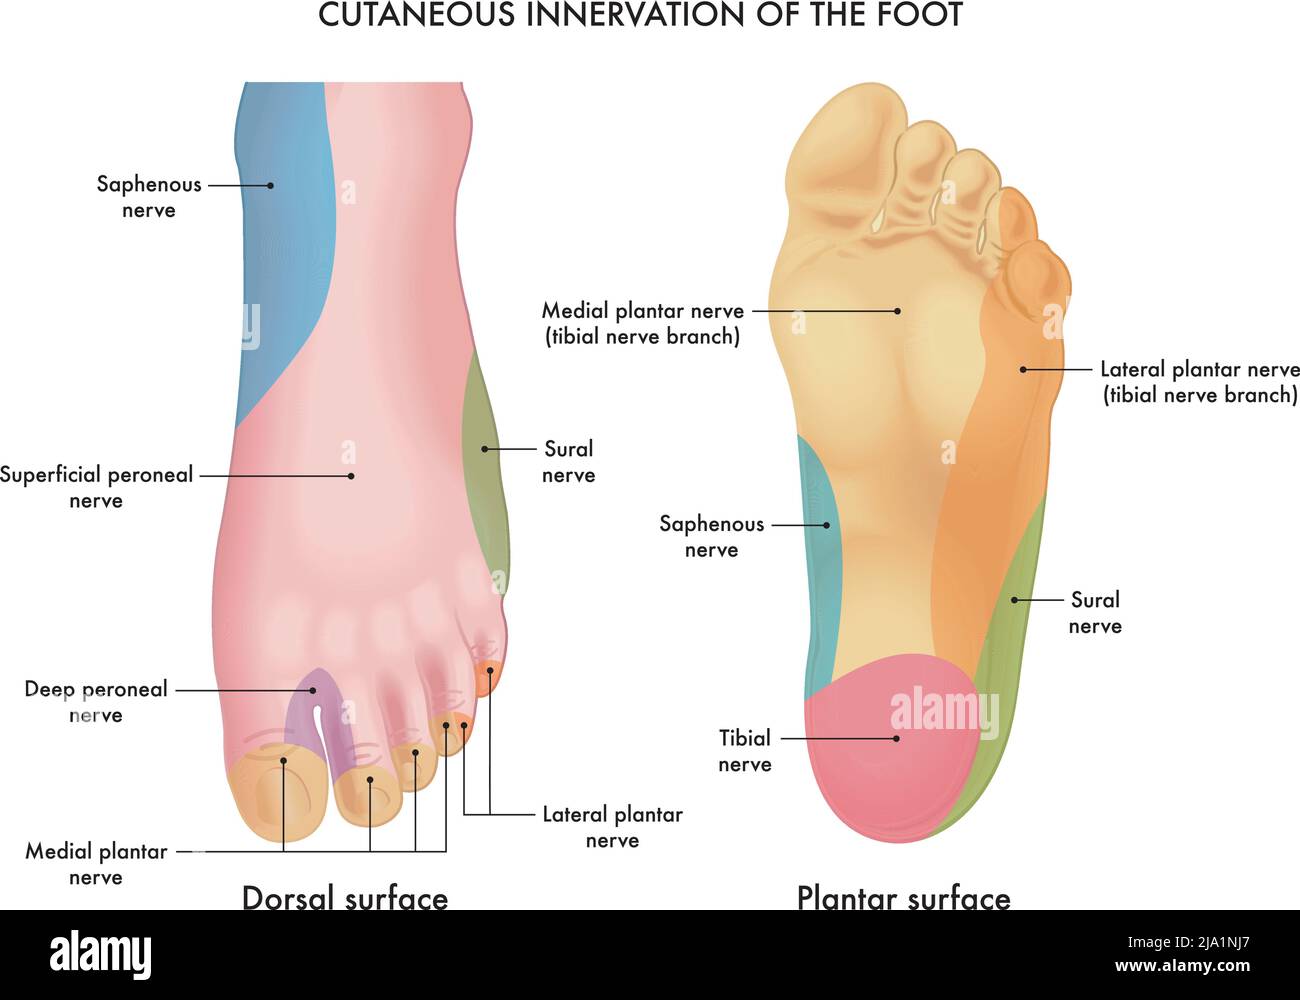 Illustrazione medica dell'innervazione cutanea del piede, con annotazioni. Illustrazione Vettoriale